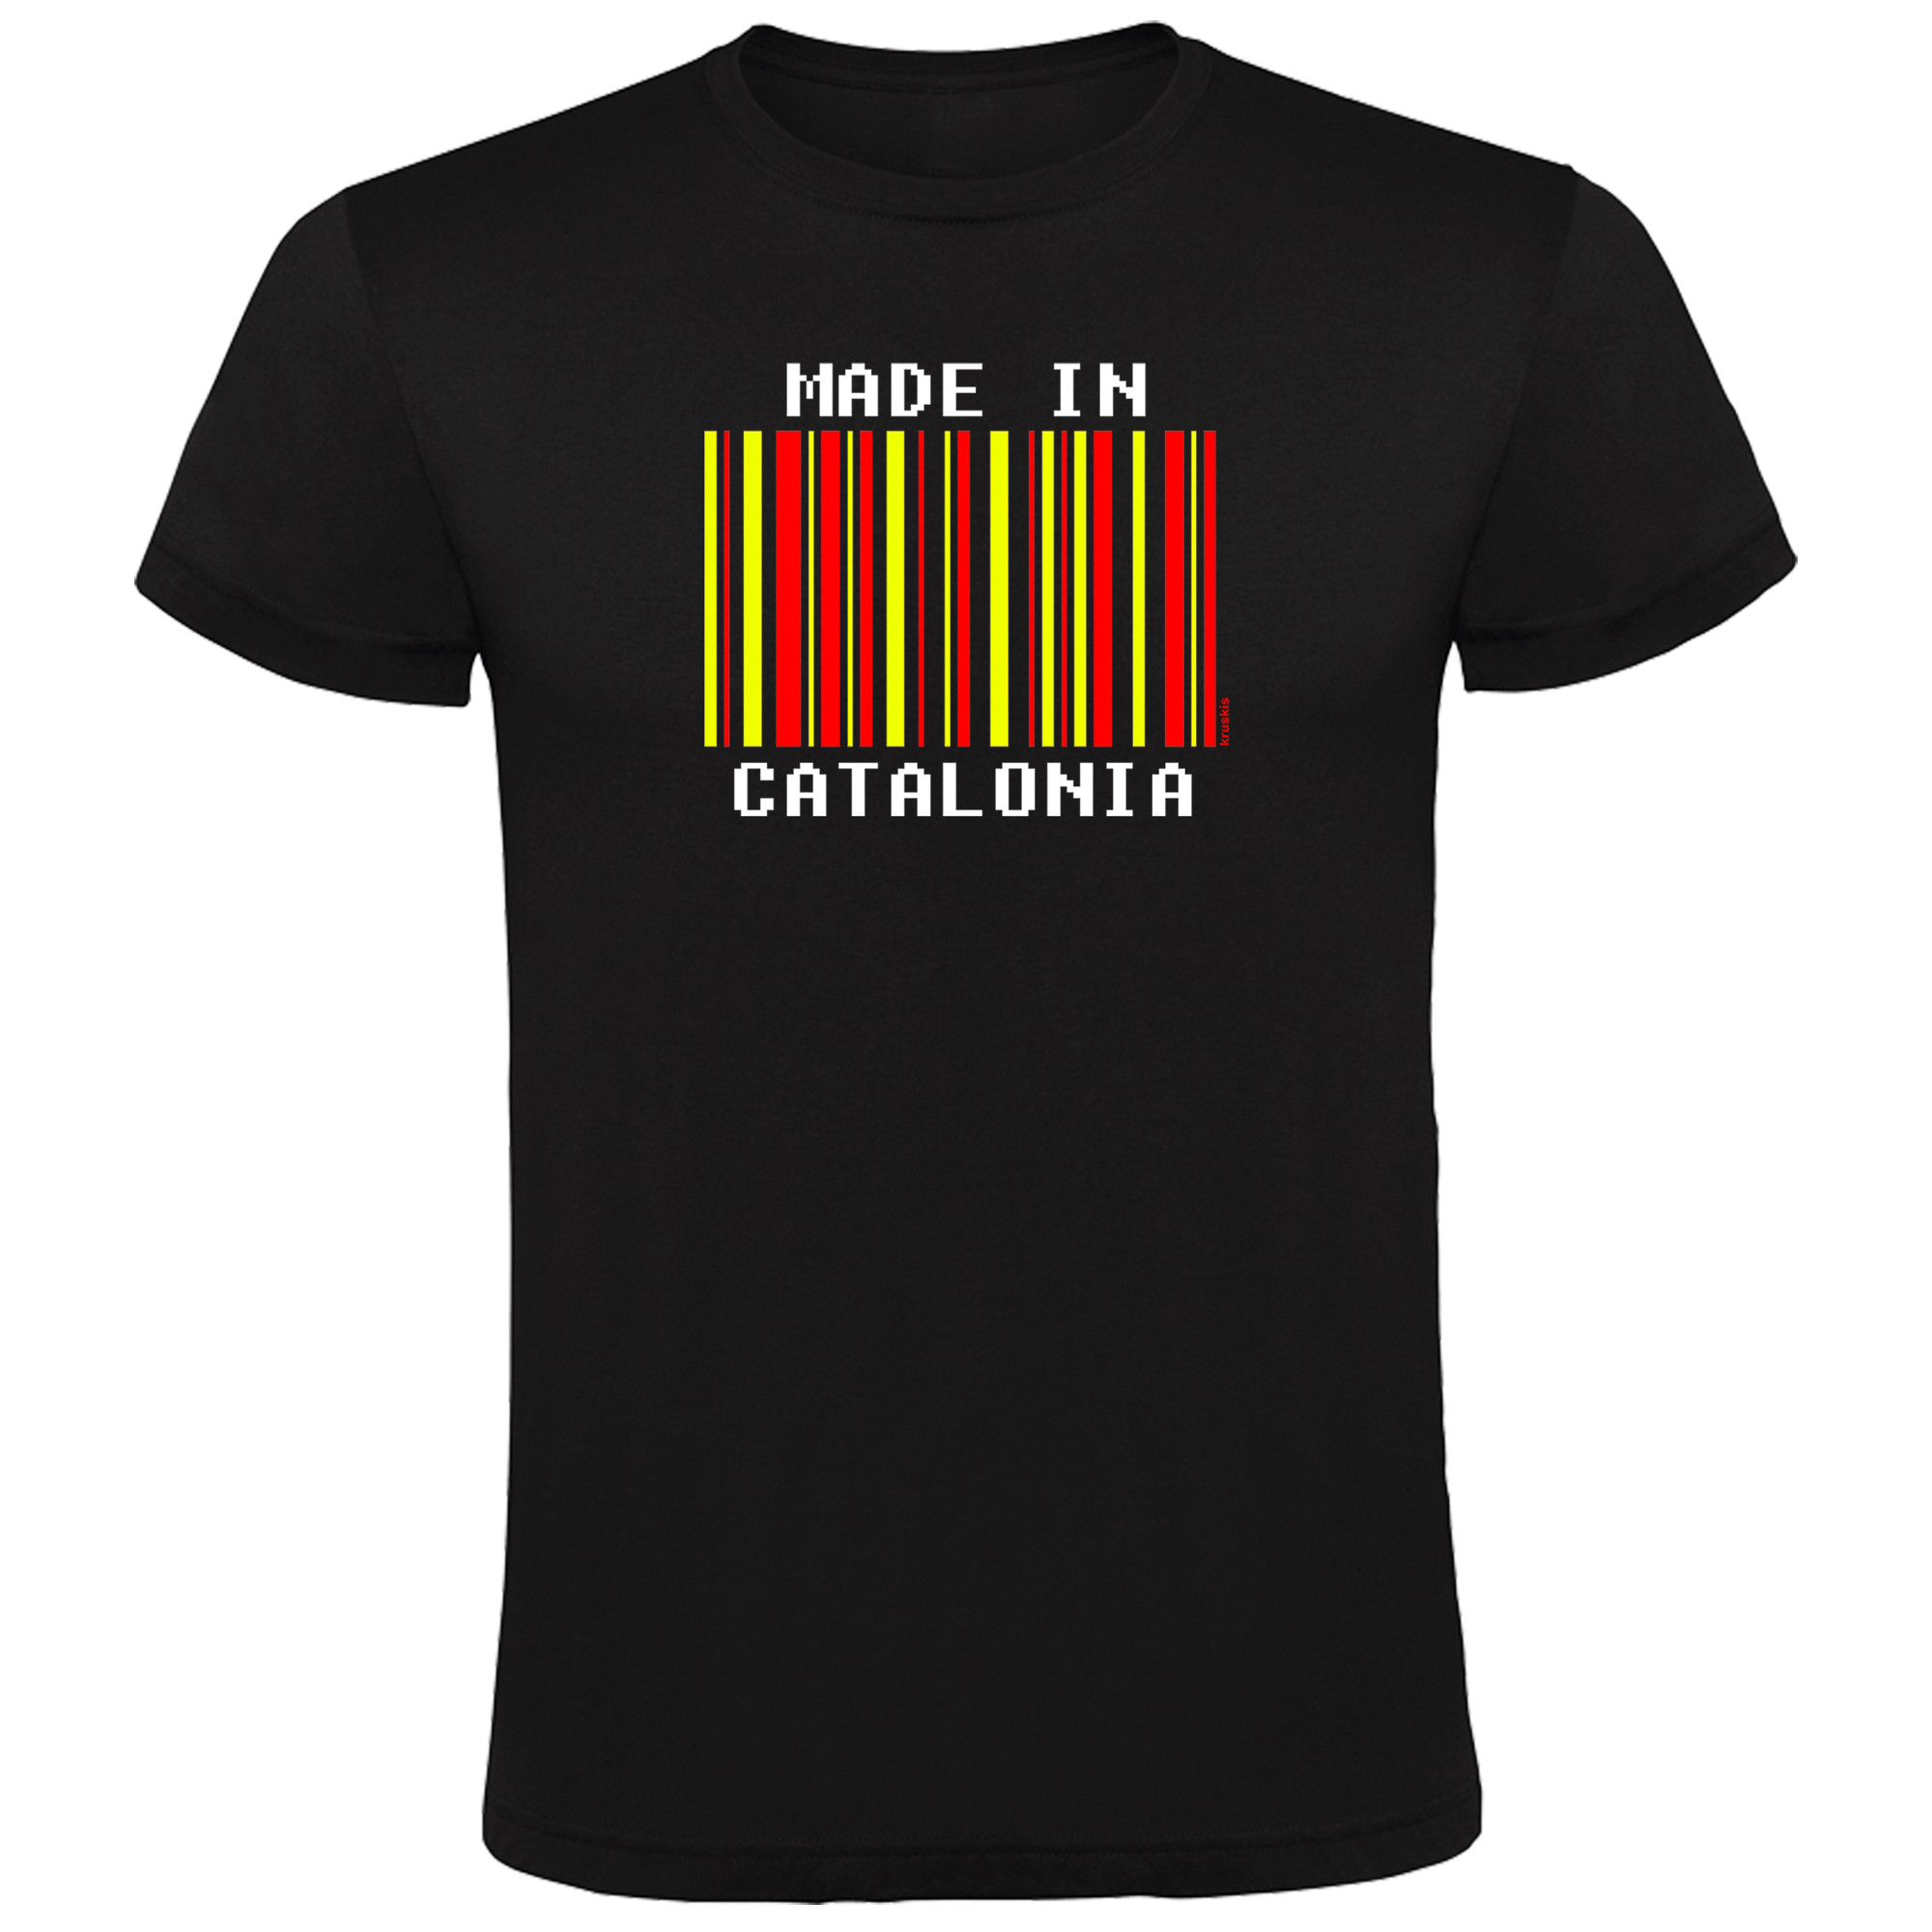 T Shirt Catalogna Made in Catalonia Manica Corta Uomo